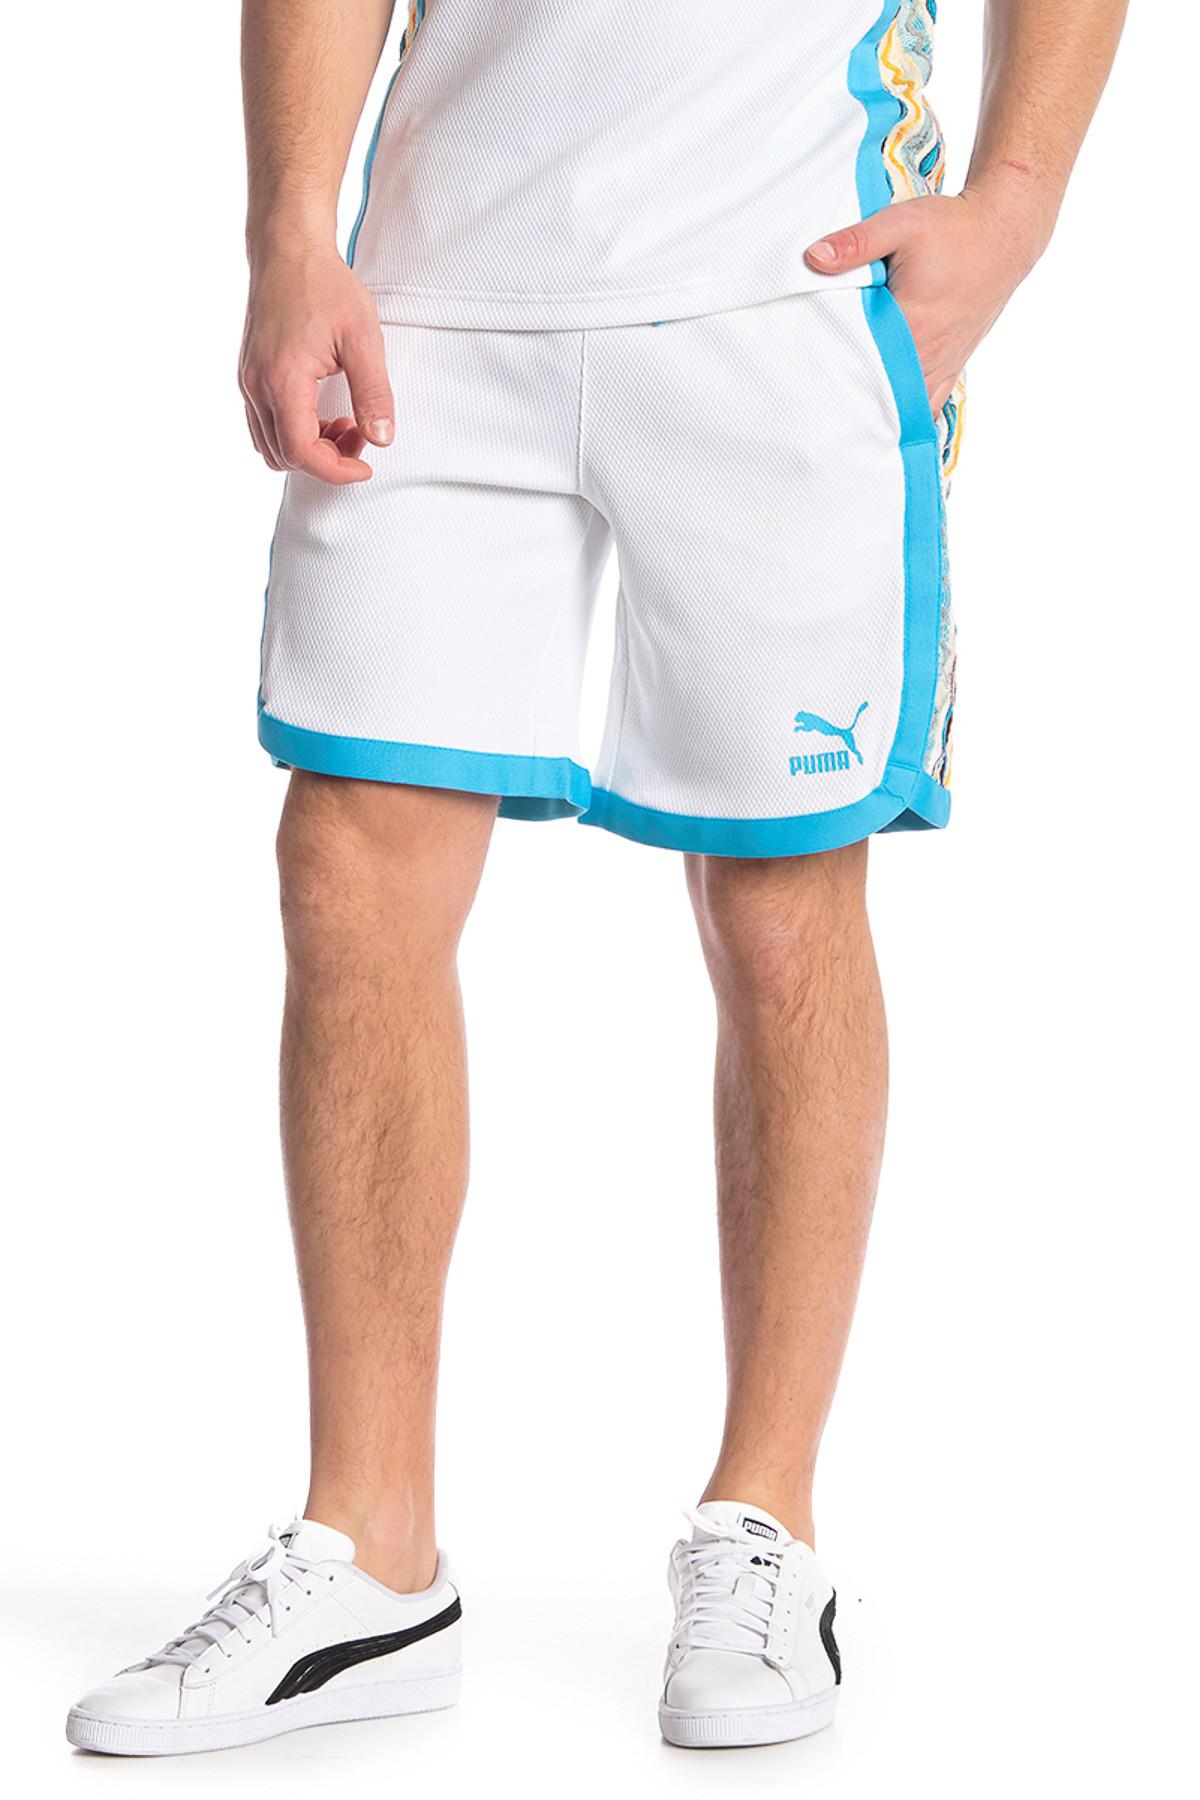 puma x coogi shorts Off 60% - sirinscrochet.com